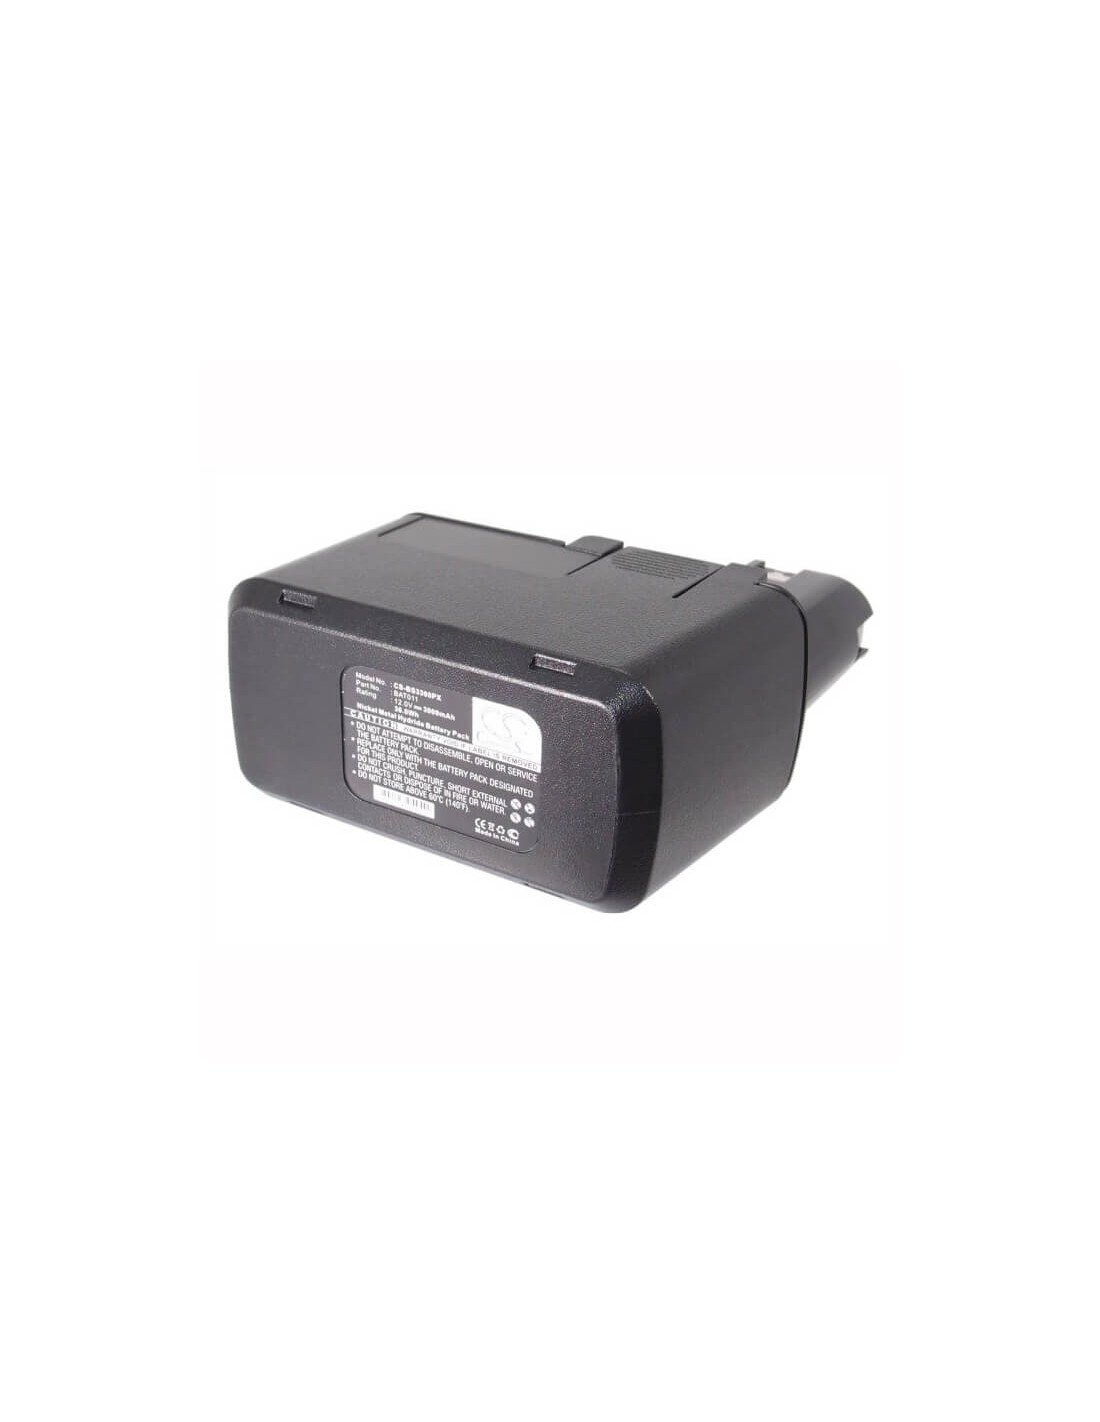 Battery for Bosch 3300k, 3305k, 330k 12V, 3000mAh - 36.00Wh